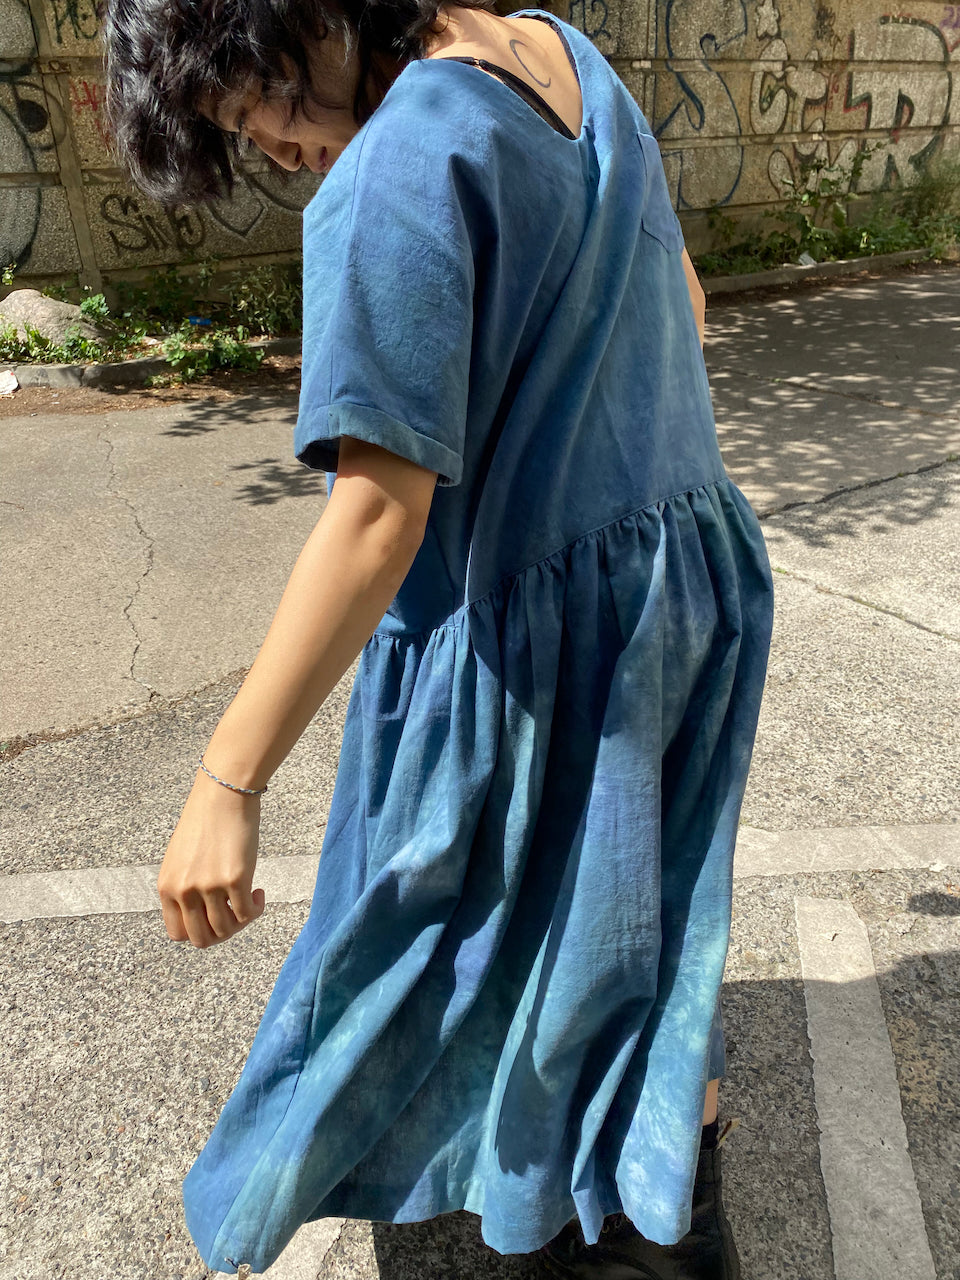 Indigo hand-dyed dress